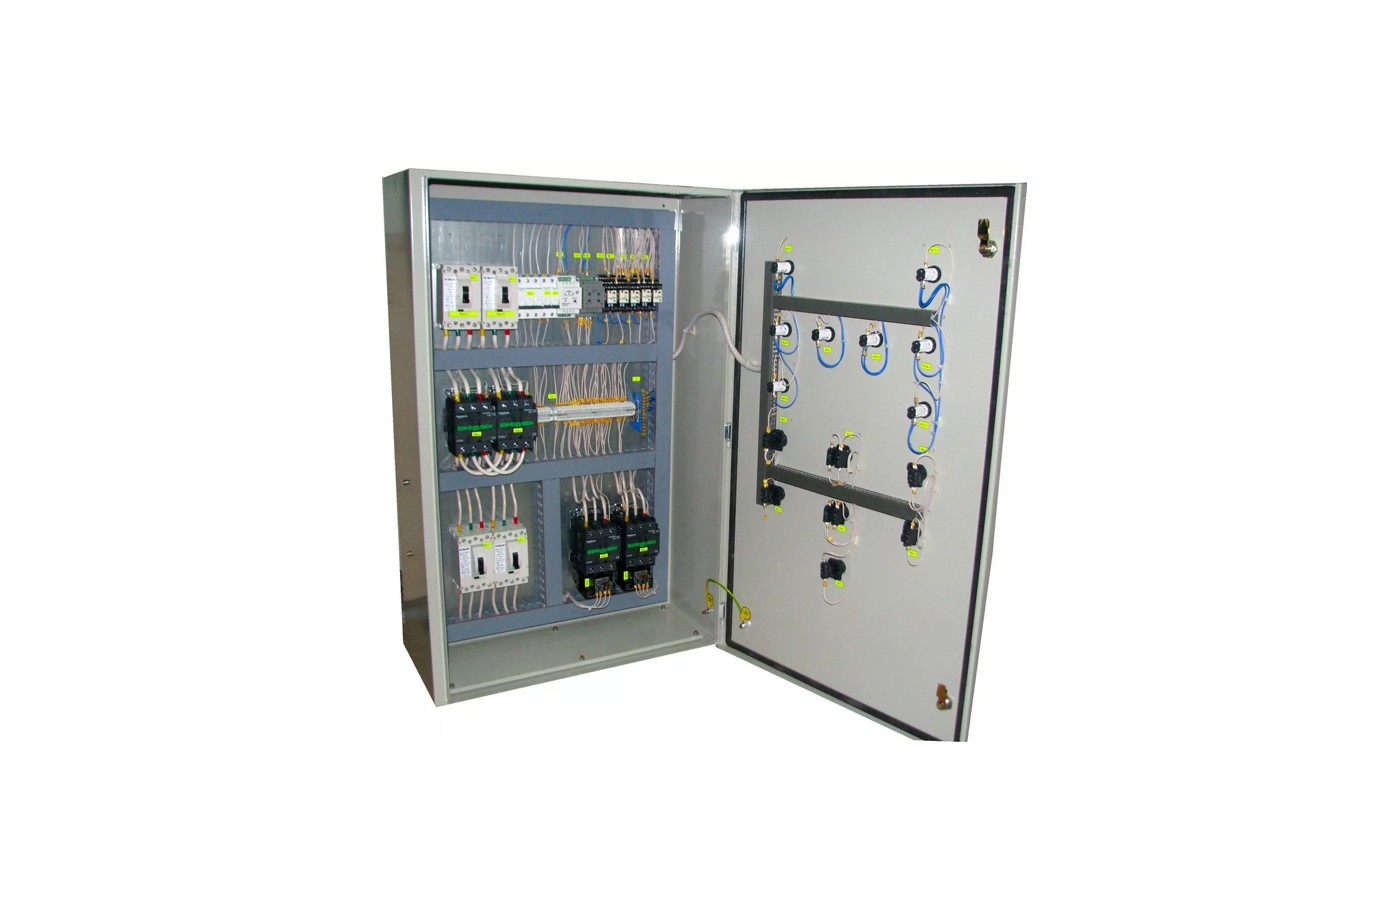 ШУЗ plus - Шкаф управления двумя электрозадвижками ШУ3+2, (1.1кВт, 380В)